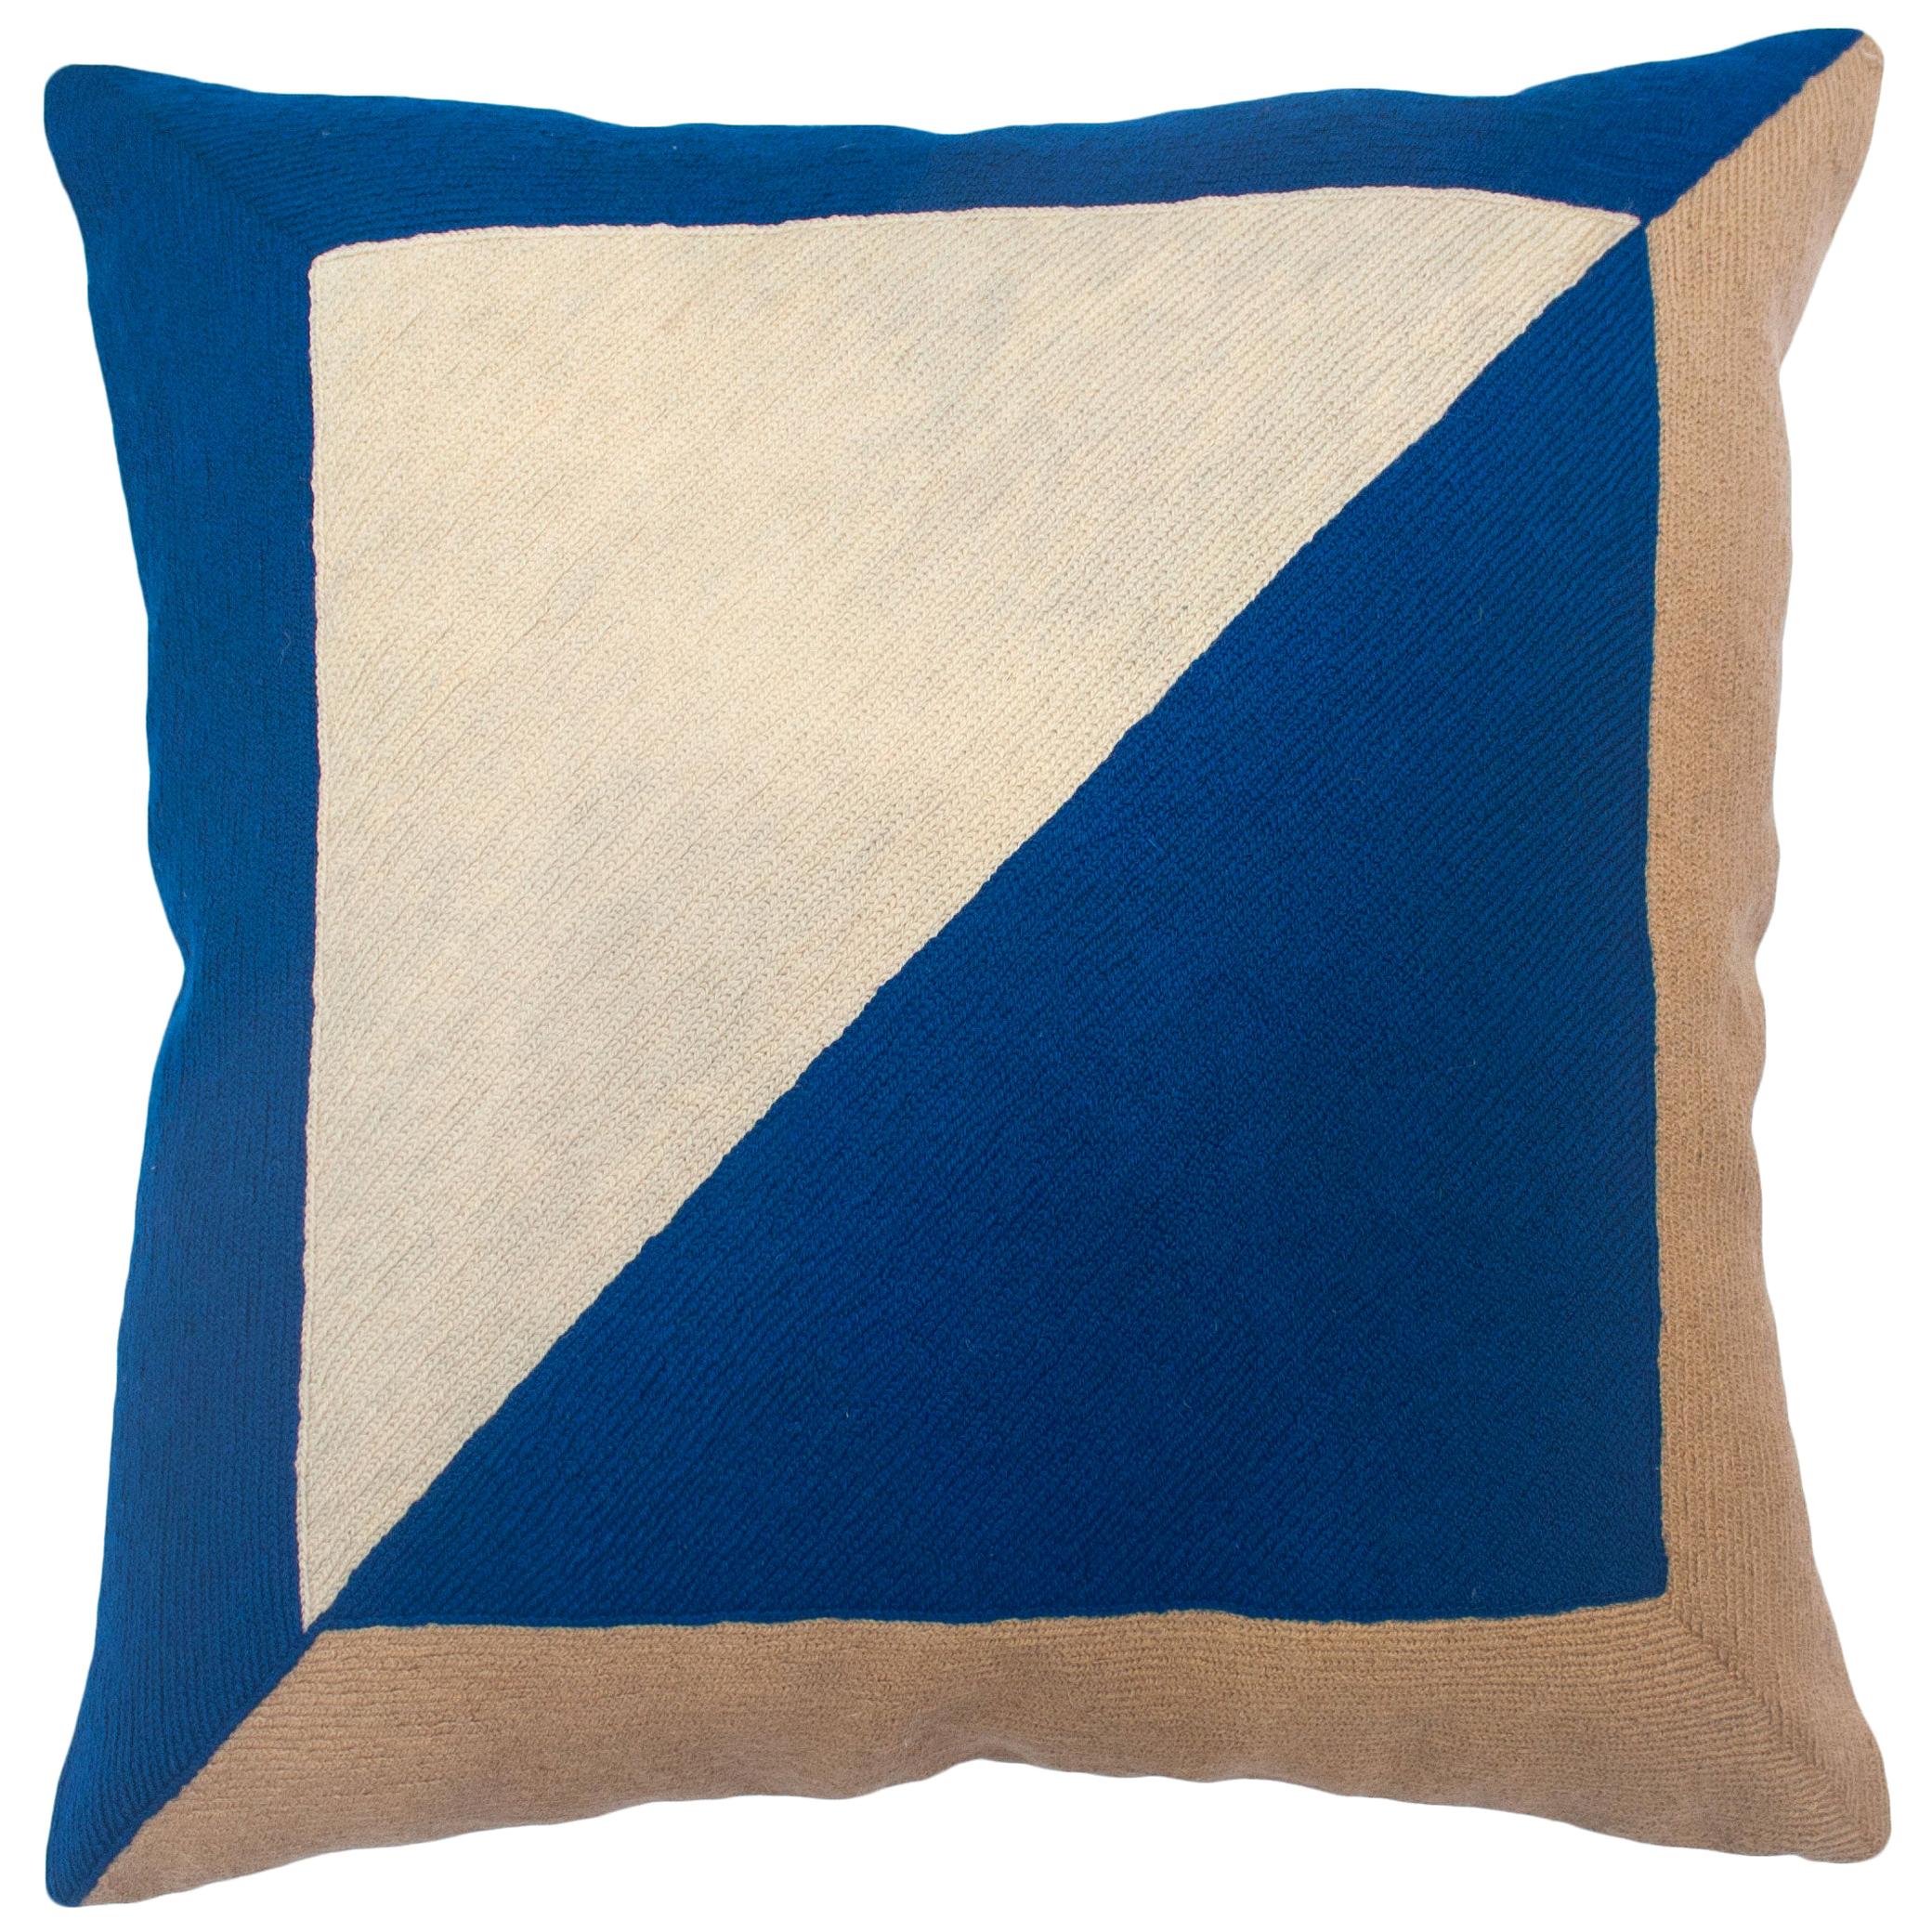 Marianne - Housse d'oreiller carrée bleue brodée à la main - Coussin d'oreiller géométrique moderne